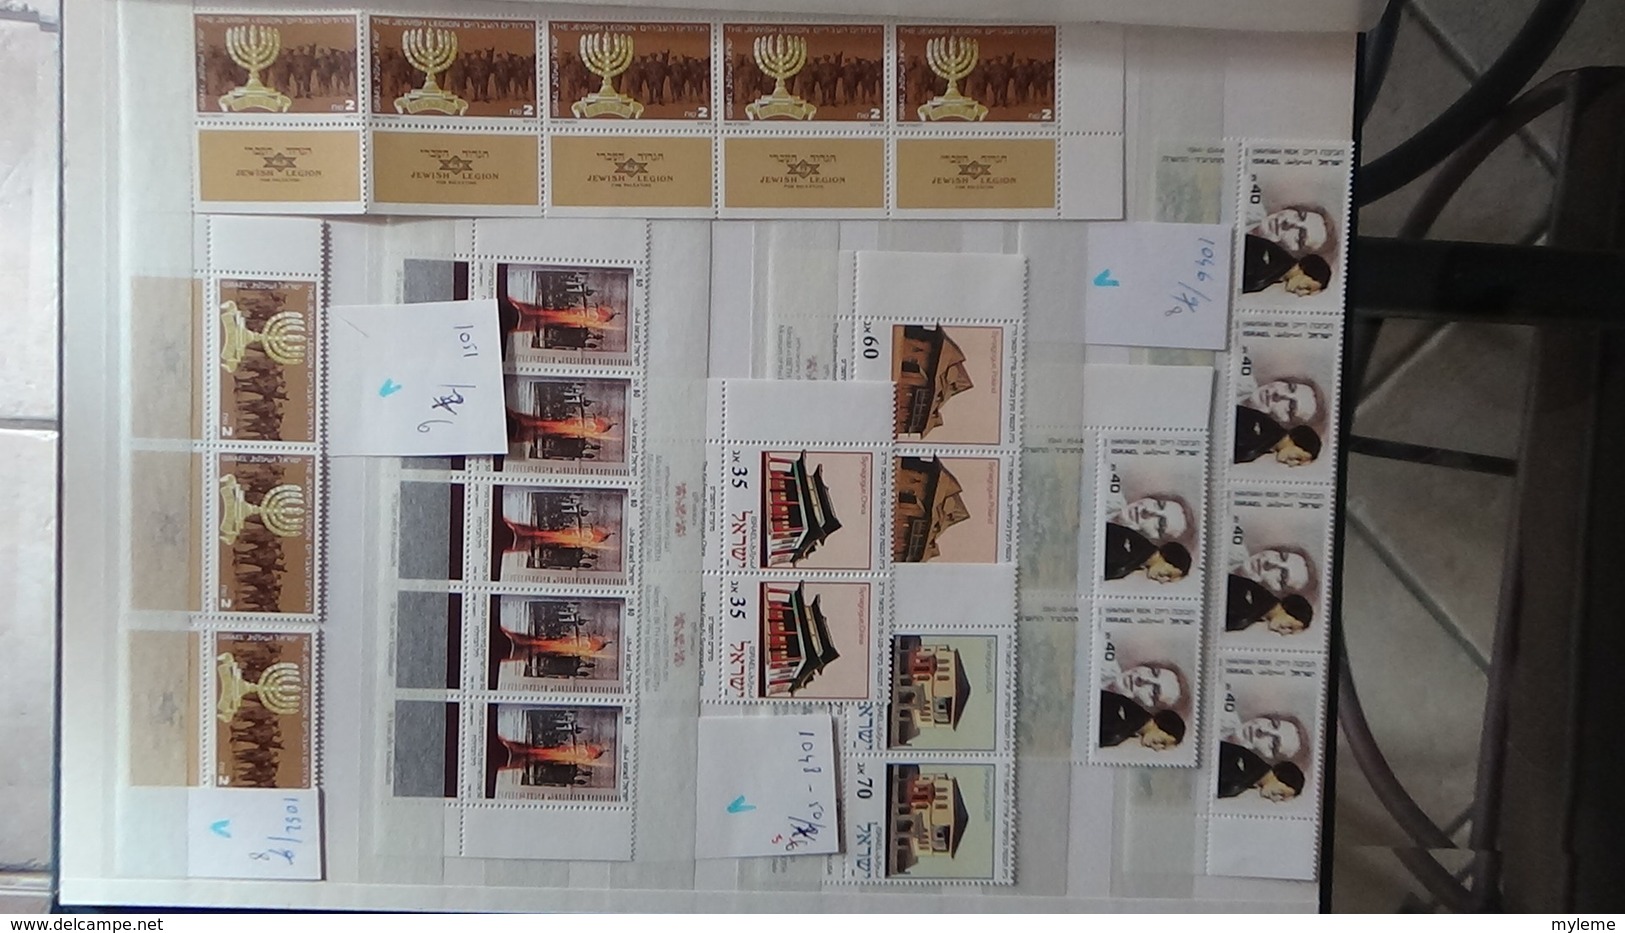 Collection de timbres, blocs, carnets et bandes tous ** d'Israël. Faciale et côté sympas !!!